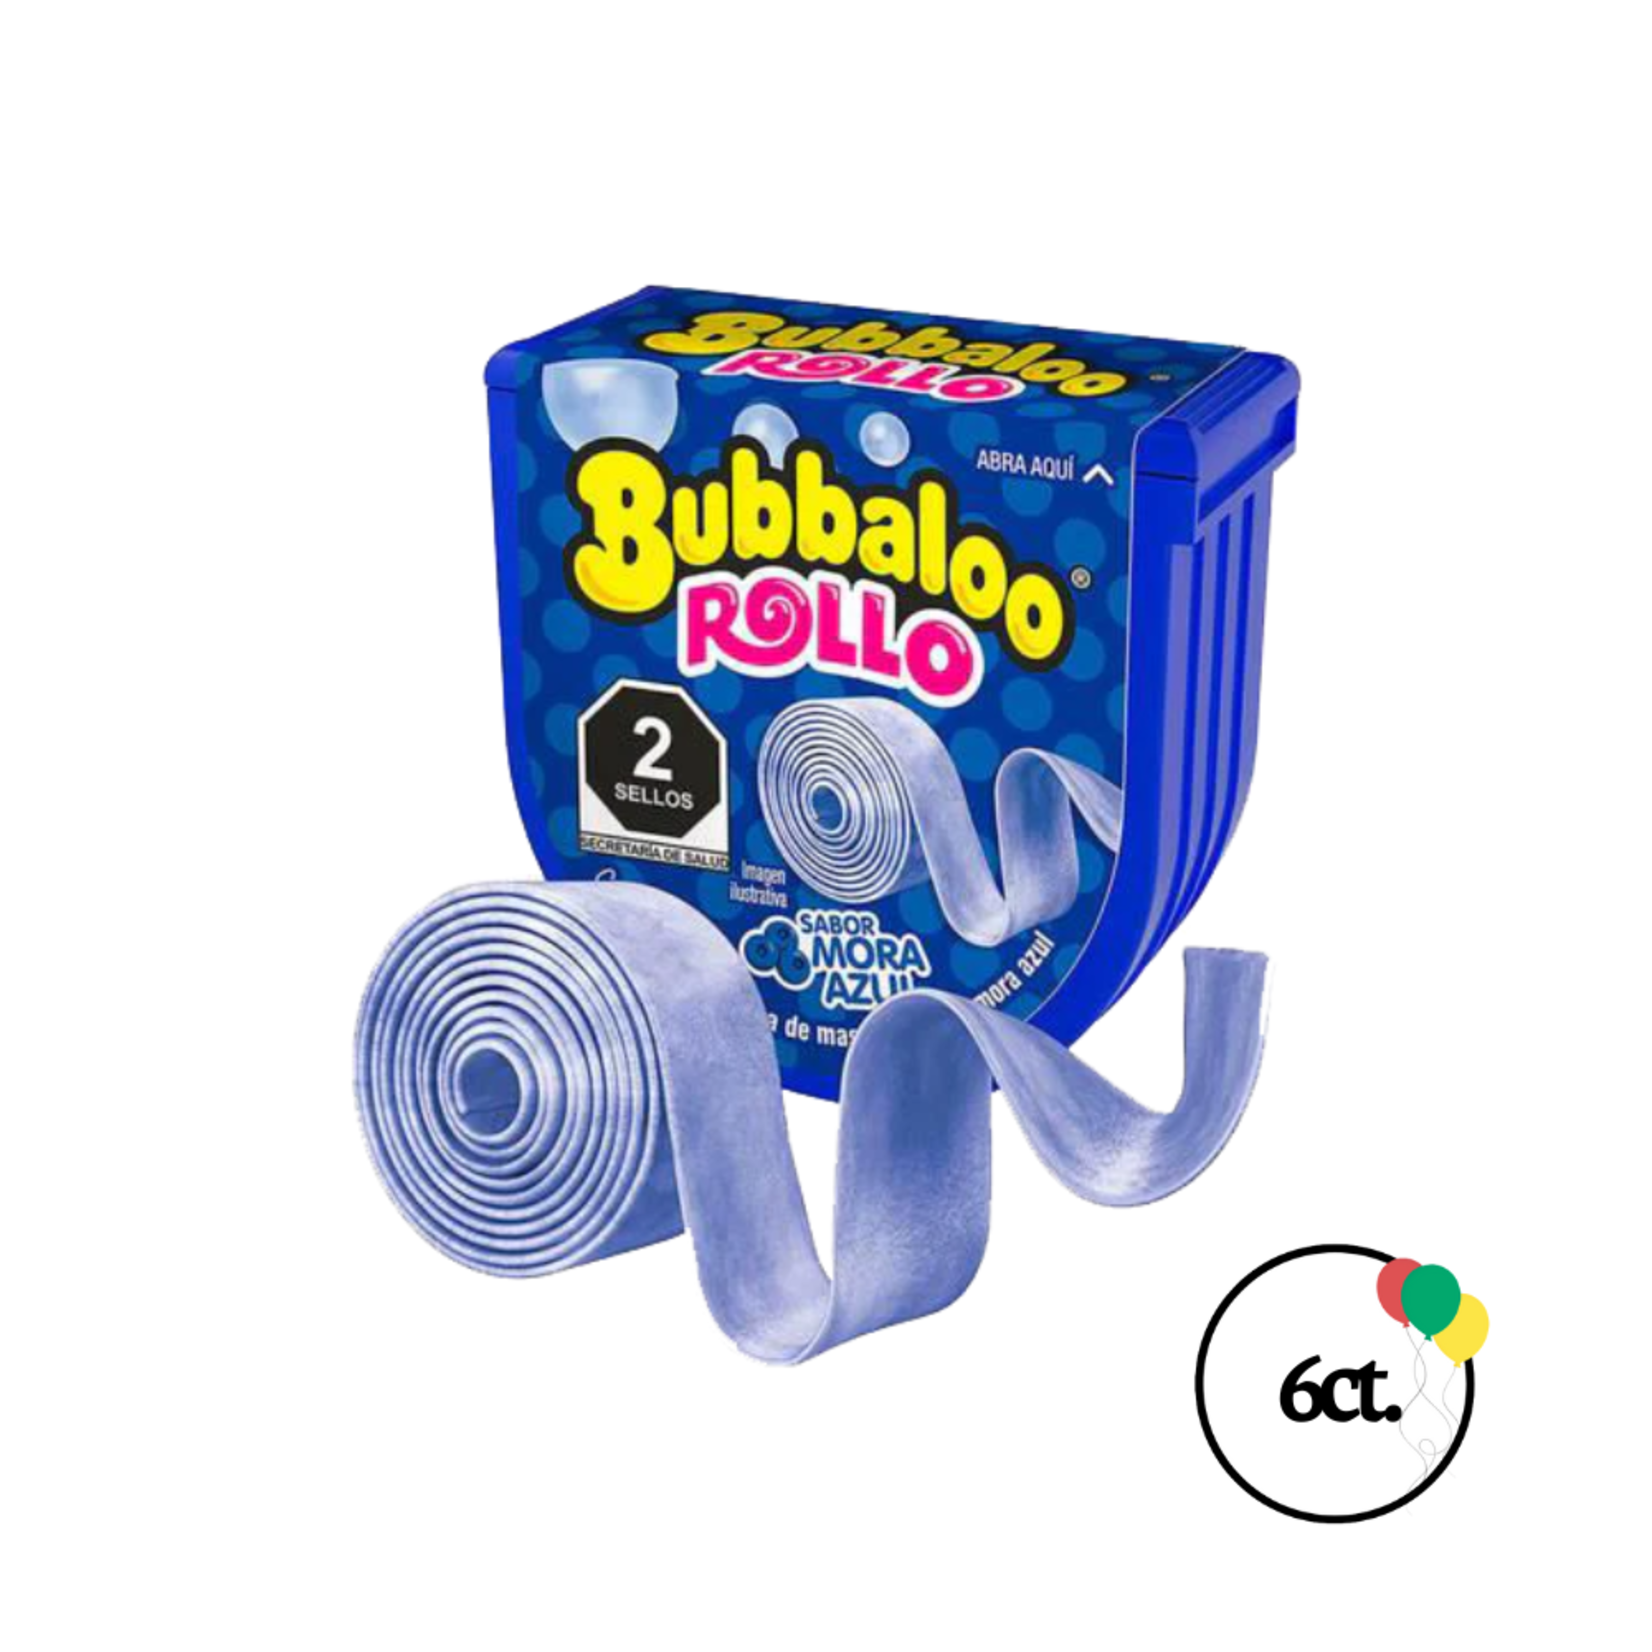 Bubbaloo Bubbaloo Rollo Mora Azul 6ct